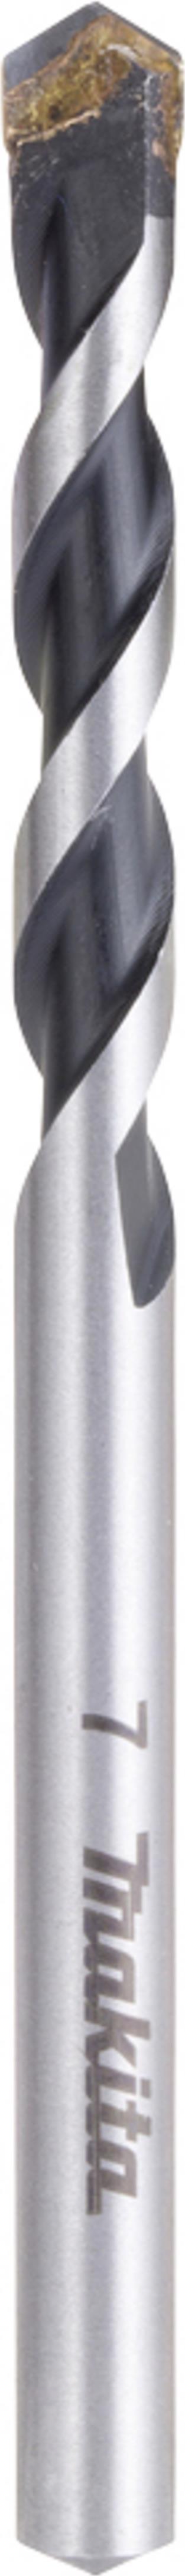 MAKITA E-11031 Hartmetall Mehrzweckbohrer 1 Stück 7 mm Gesamtlänge 100 mm Schnellspannbohrfutter 1 S